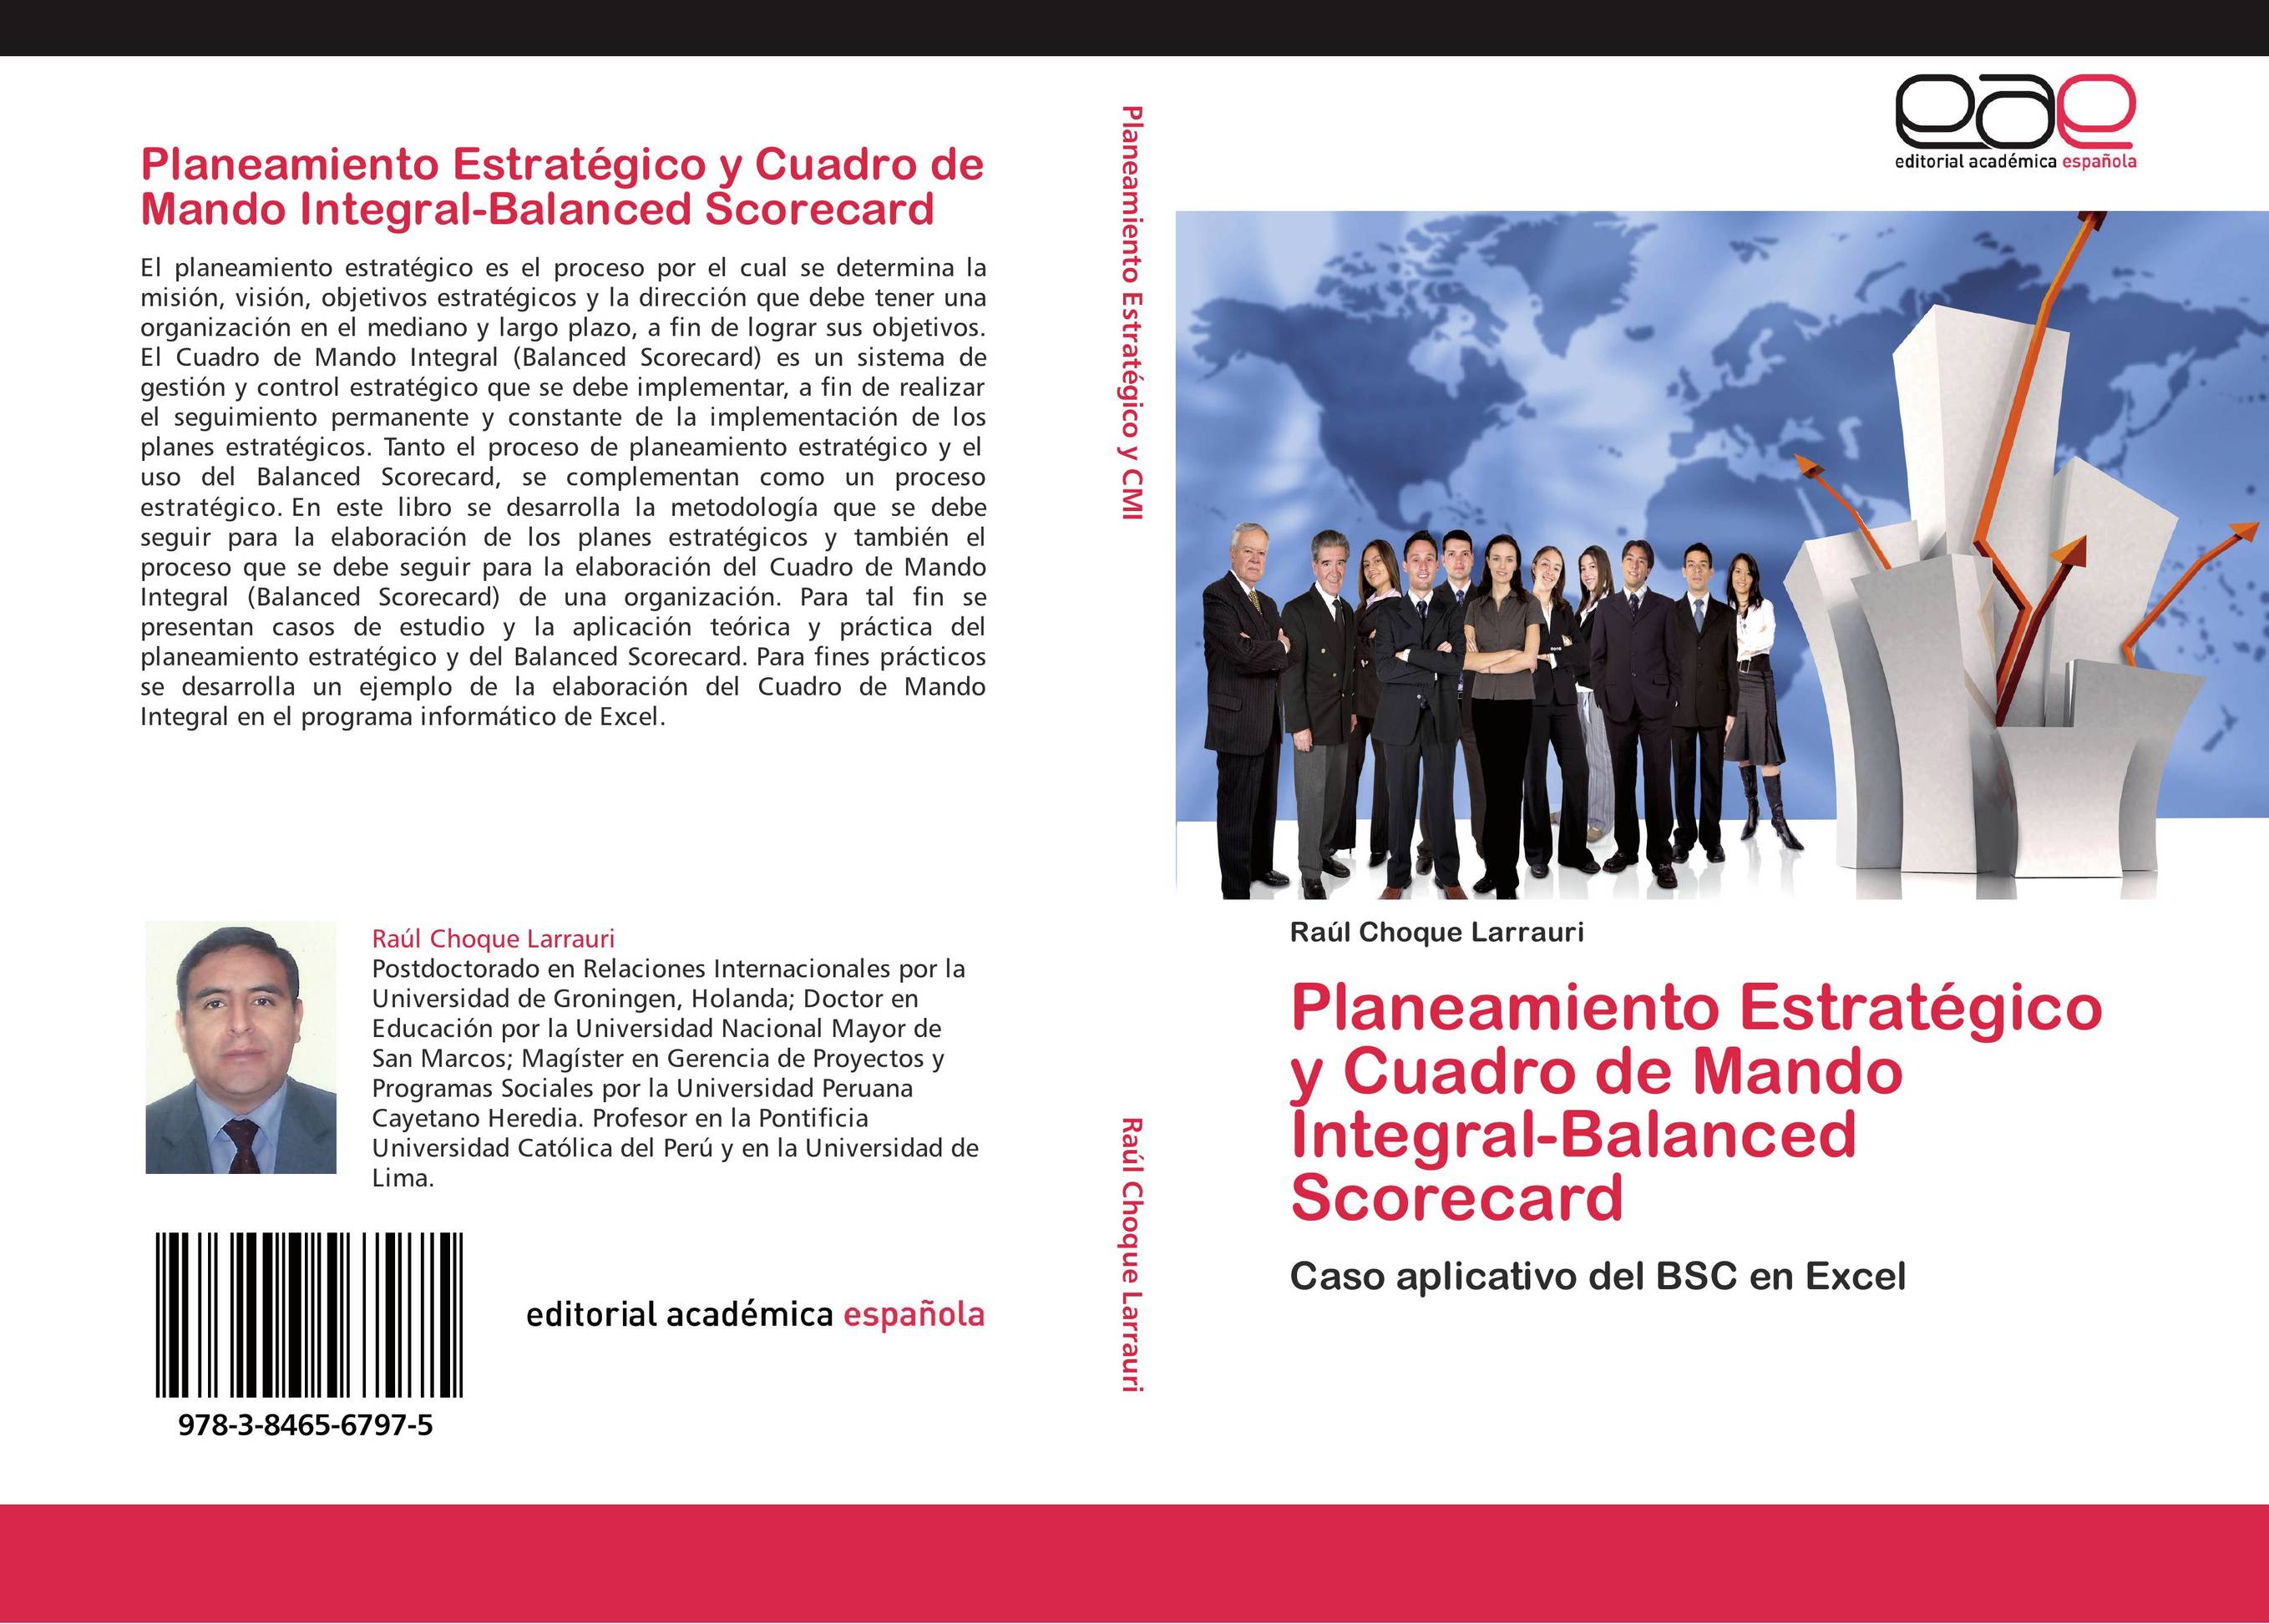 Planeamiento Estratégico y Cuadro de Mando Integral-Balanced Scorecard